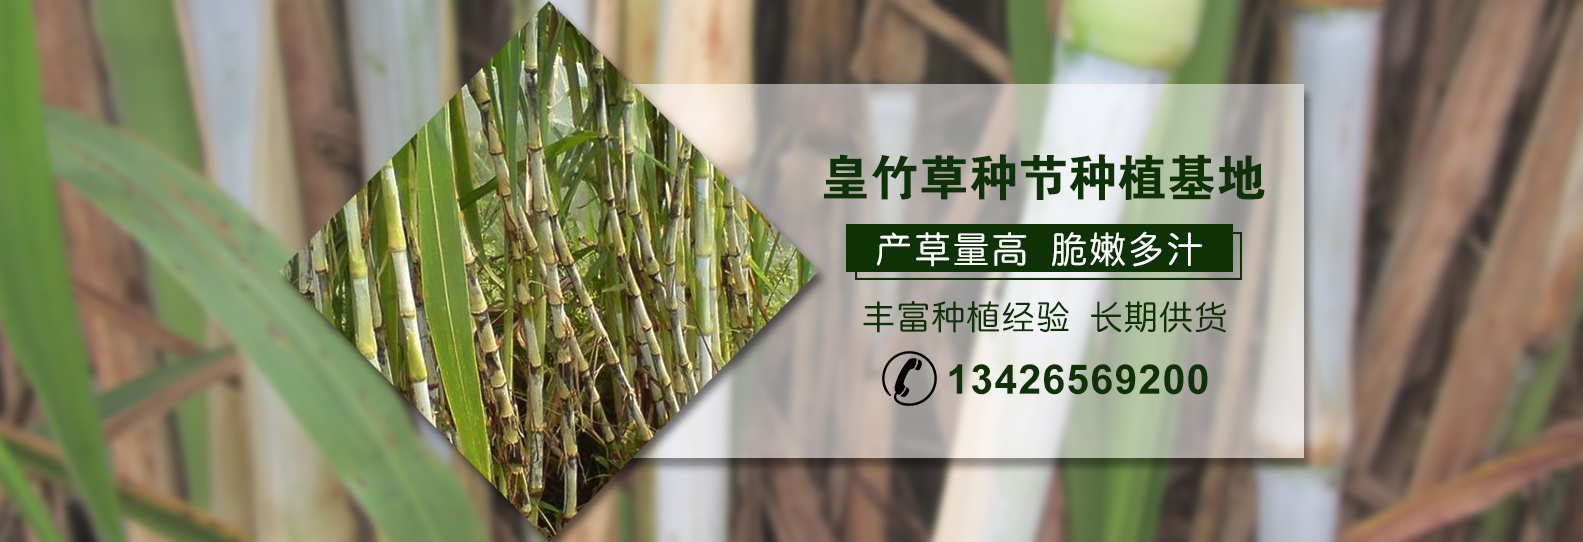 皇竹草的营养价值超乎你的想象